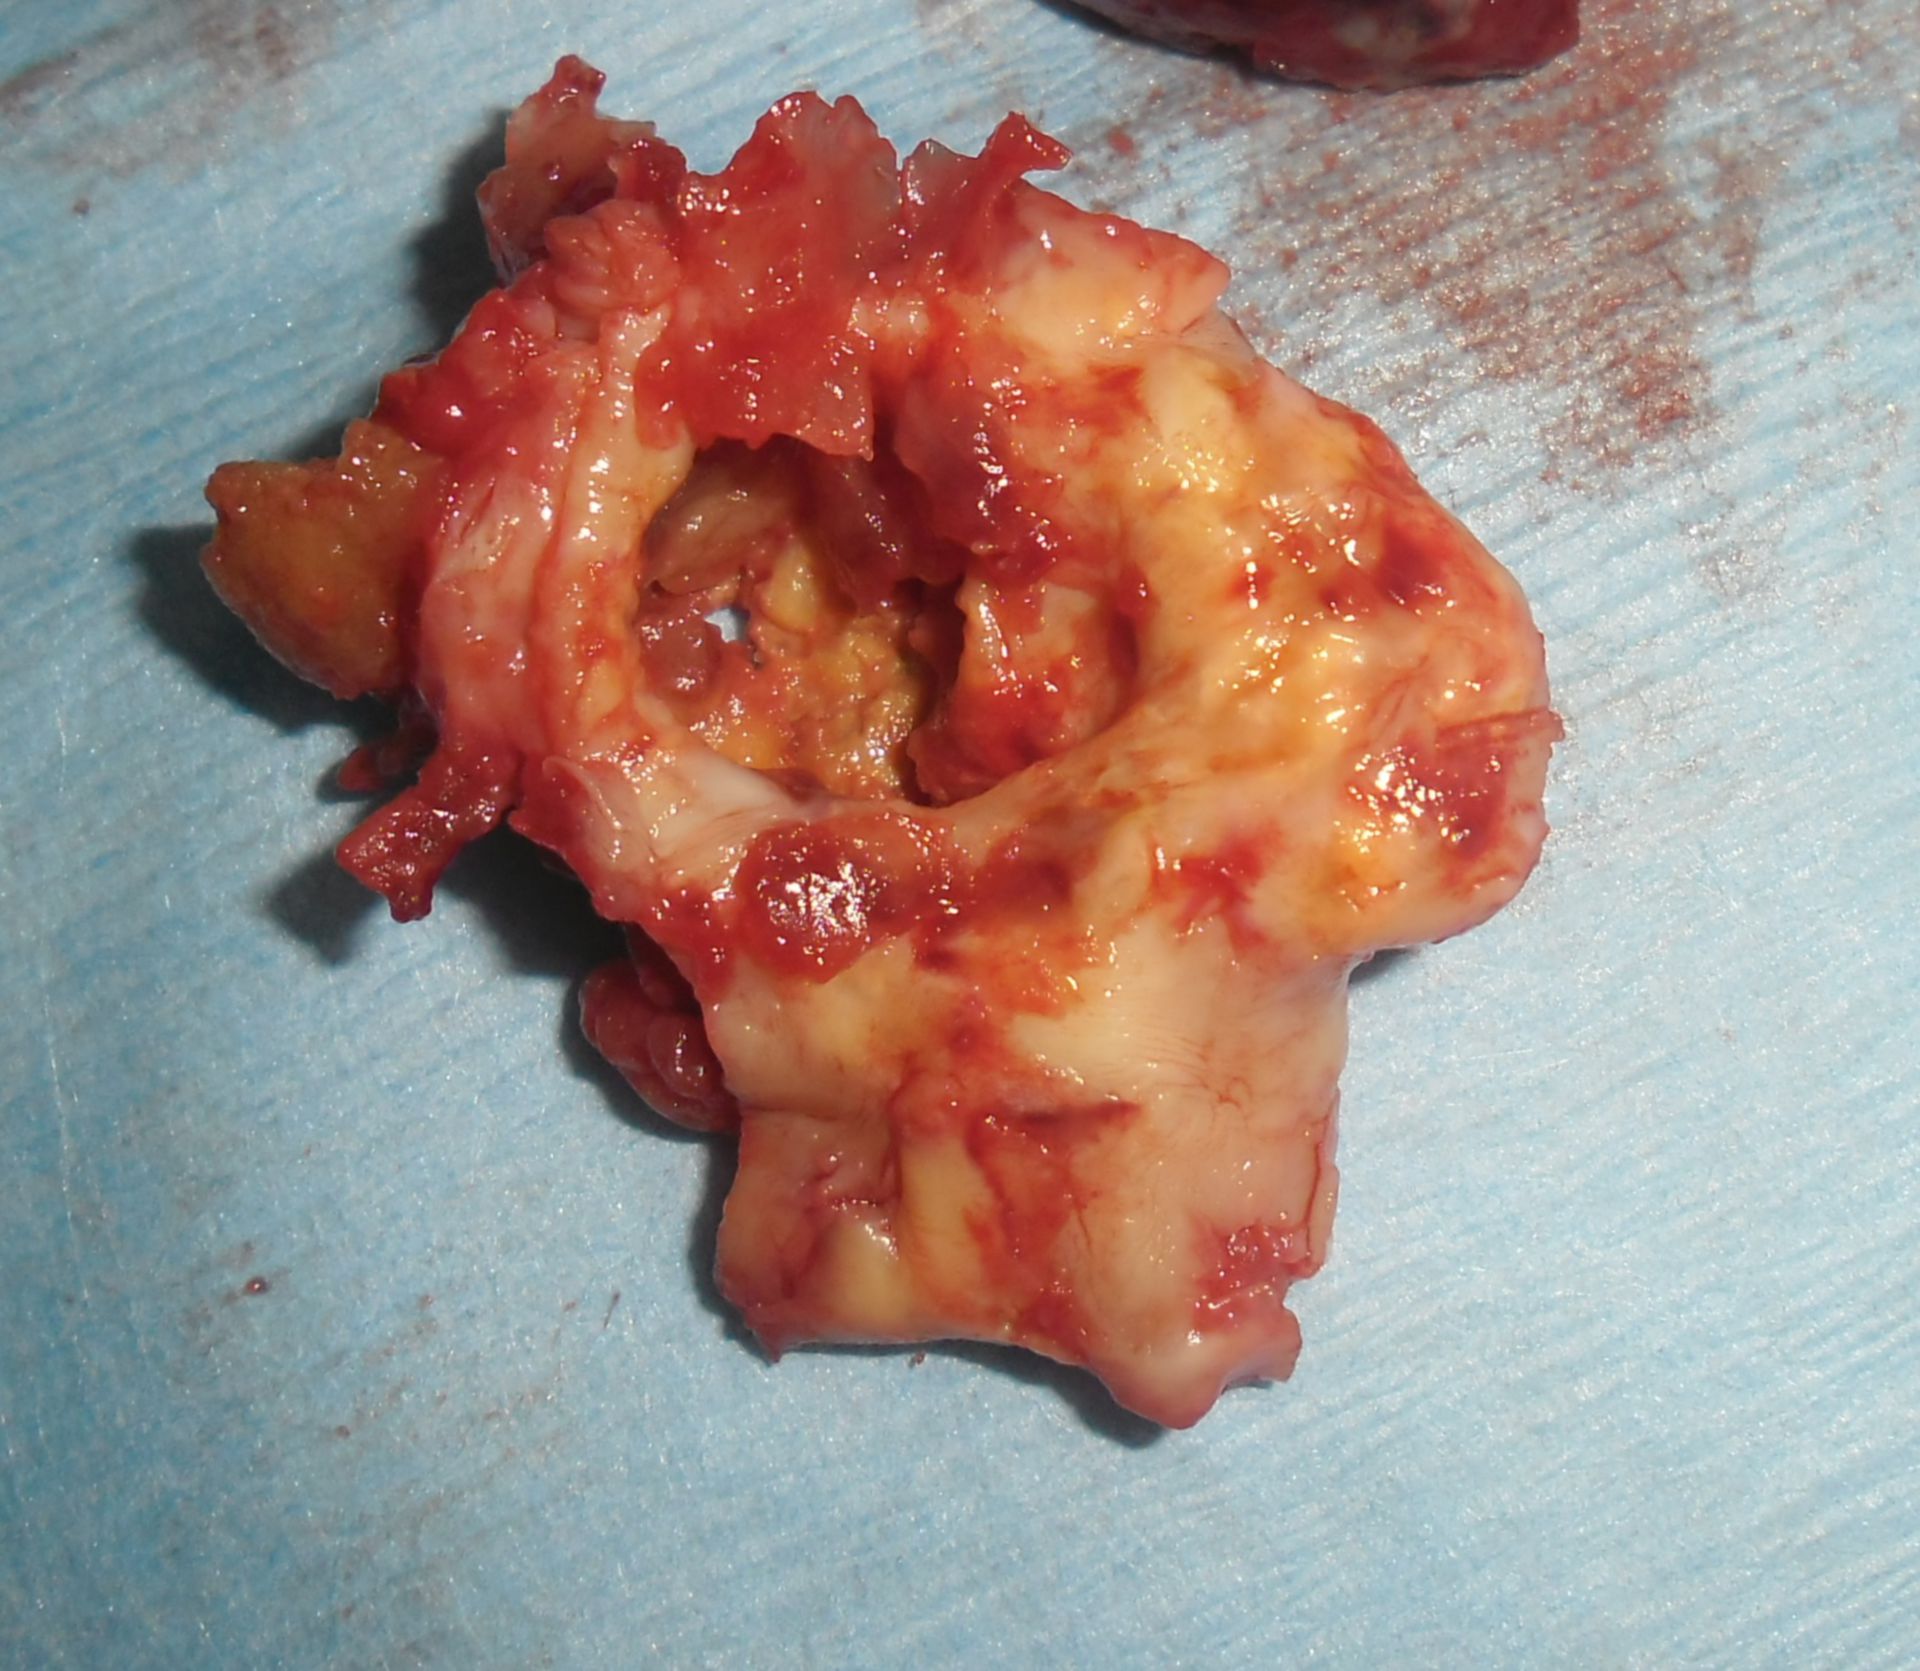 Aneurisma de la arteria poplitea - sin el trombo